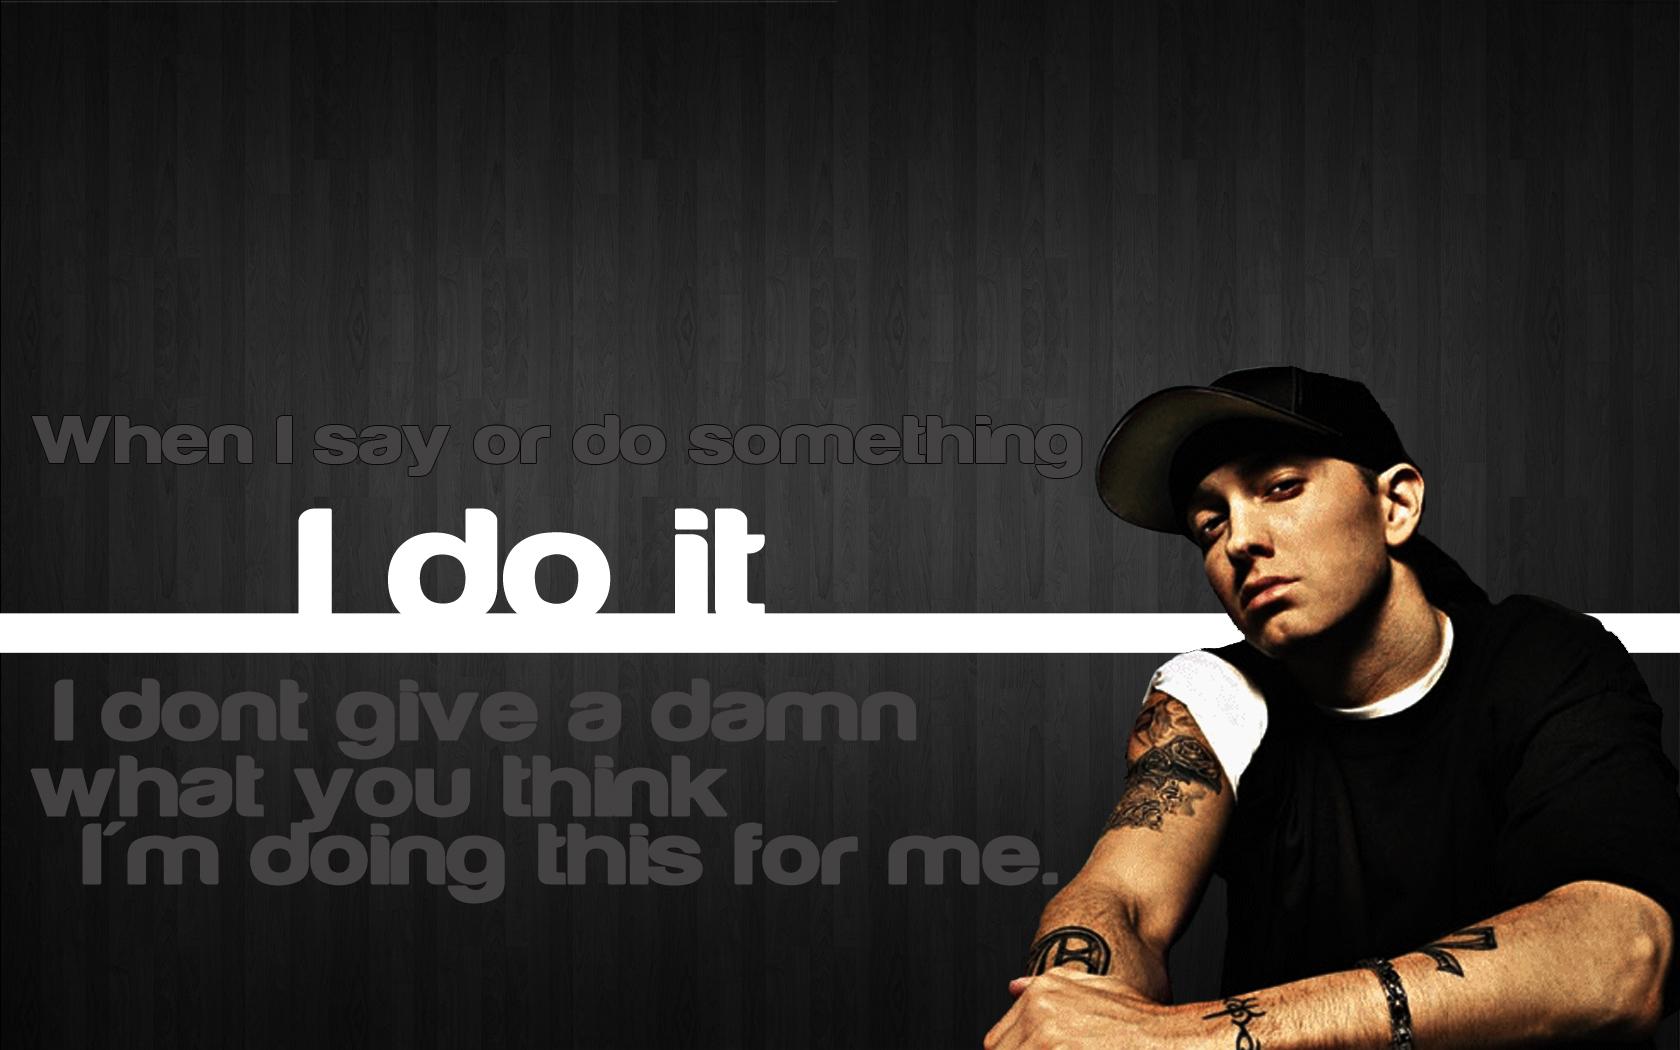 Eminem Quotes Wallpaper High Resolution • dodskypict